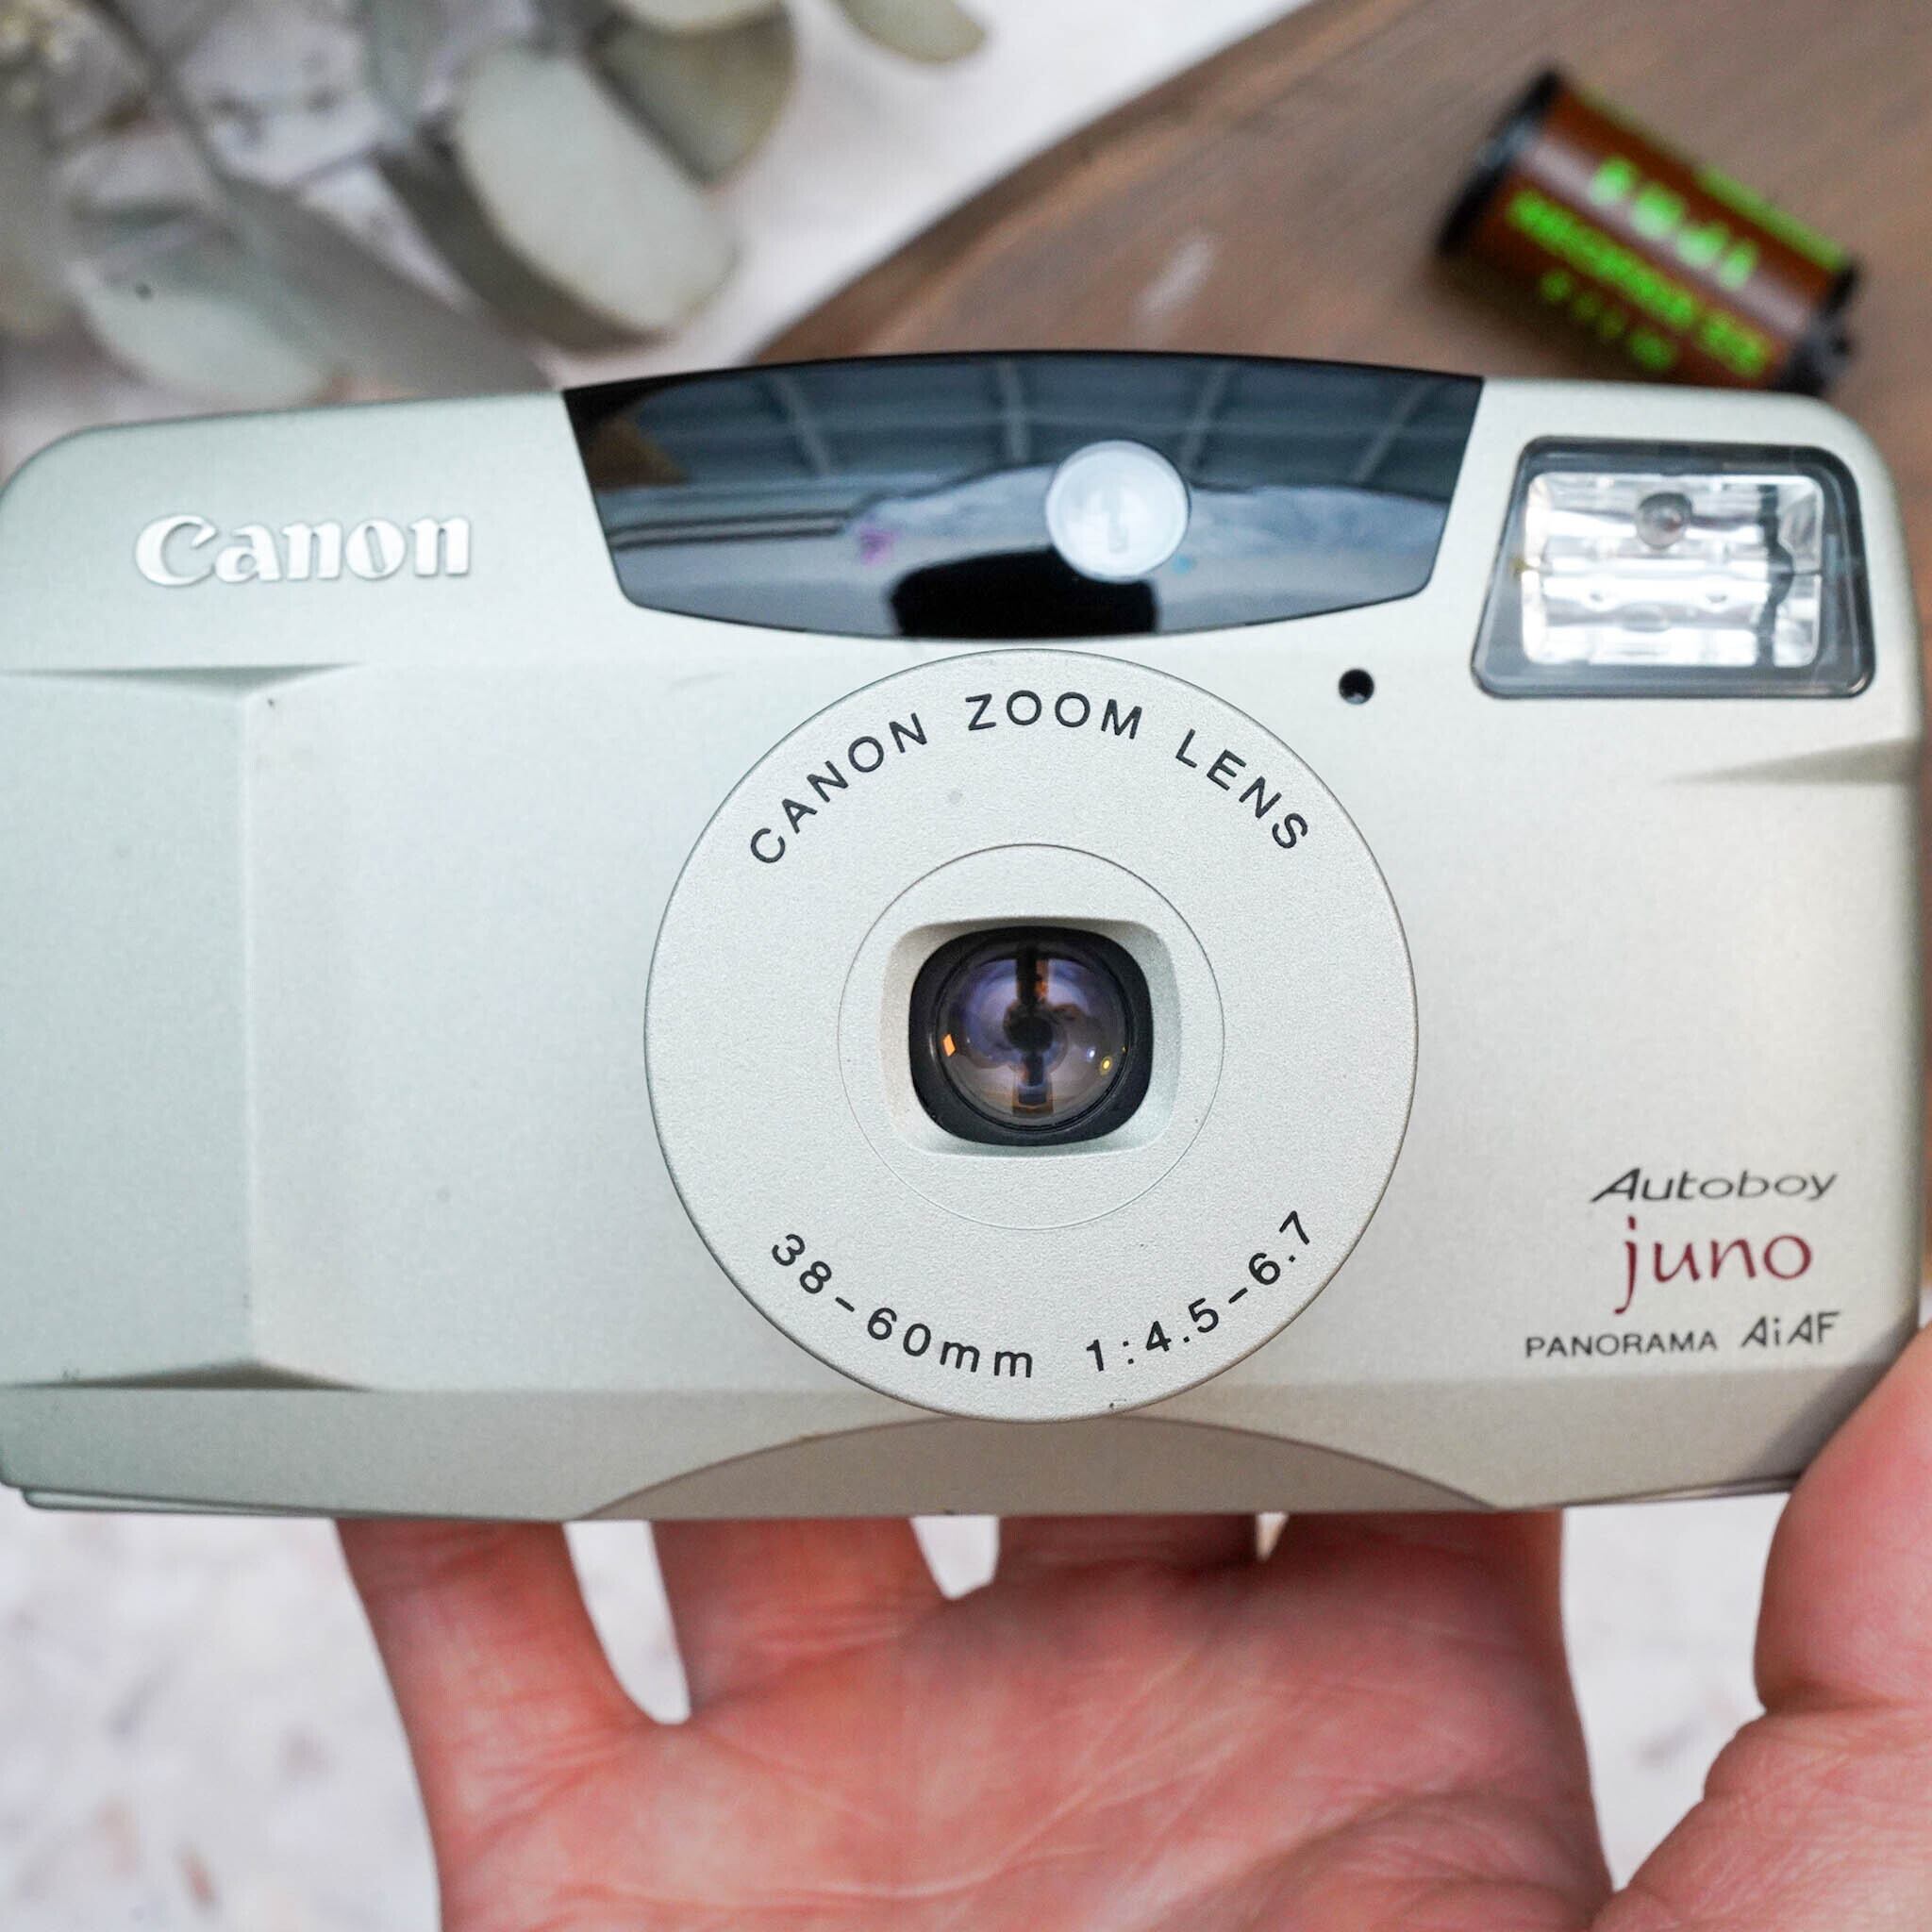 Canon】 AutoBoy JUNO 洗練されたコンパクトカメラ | Macha Cameras